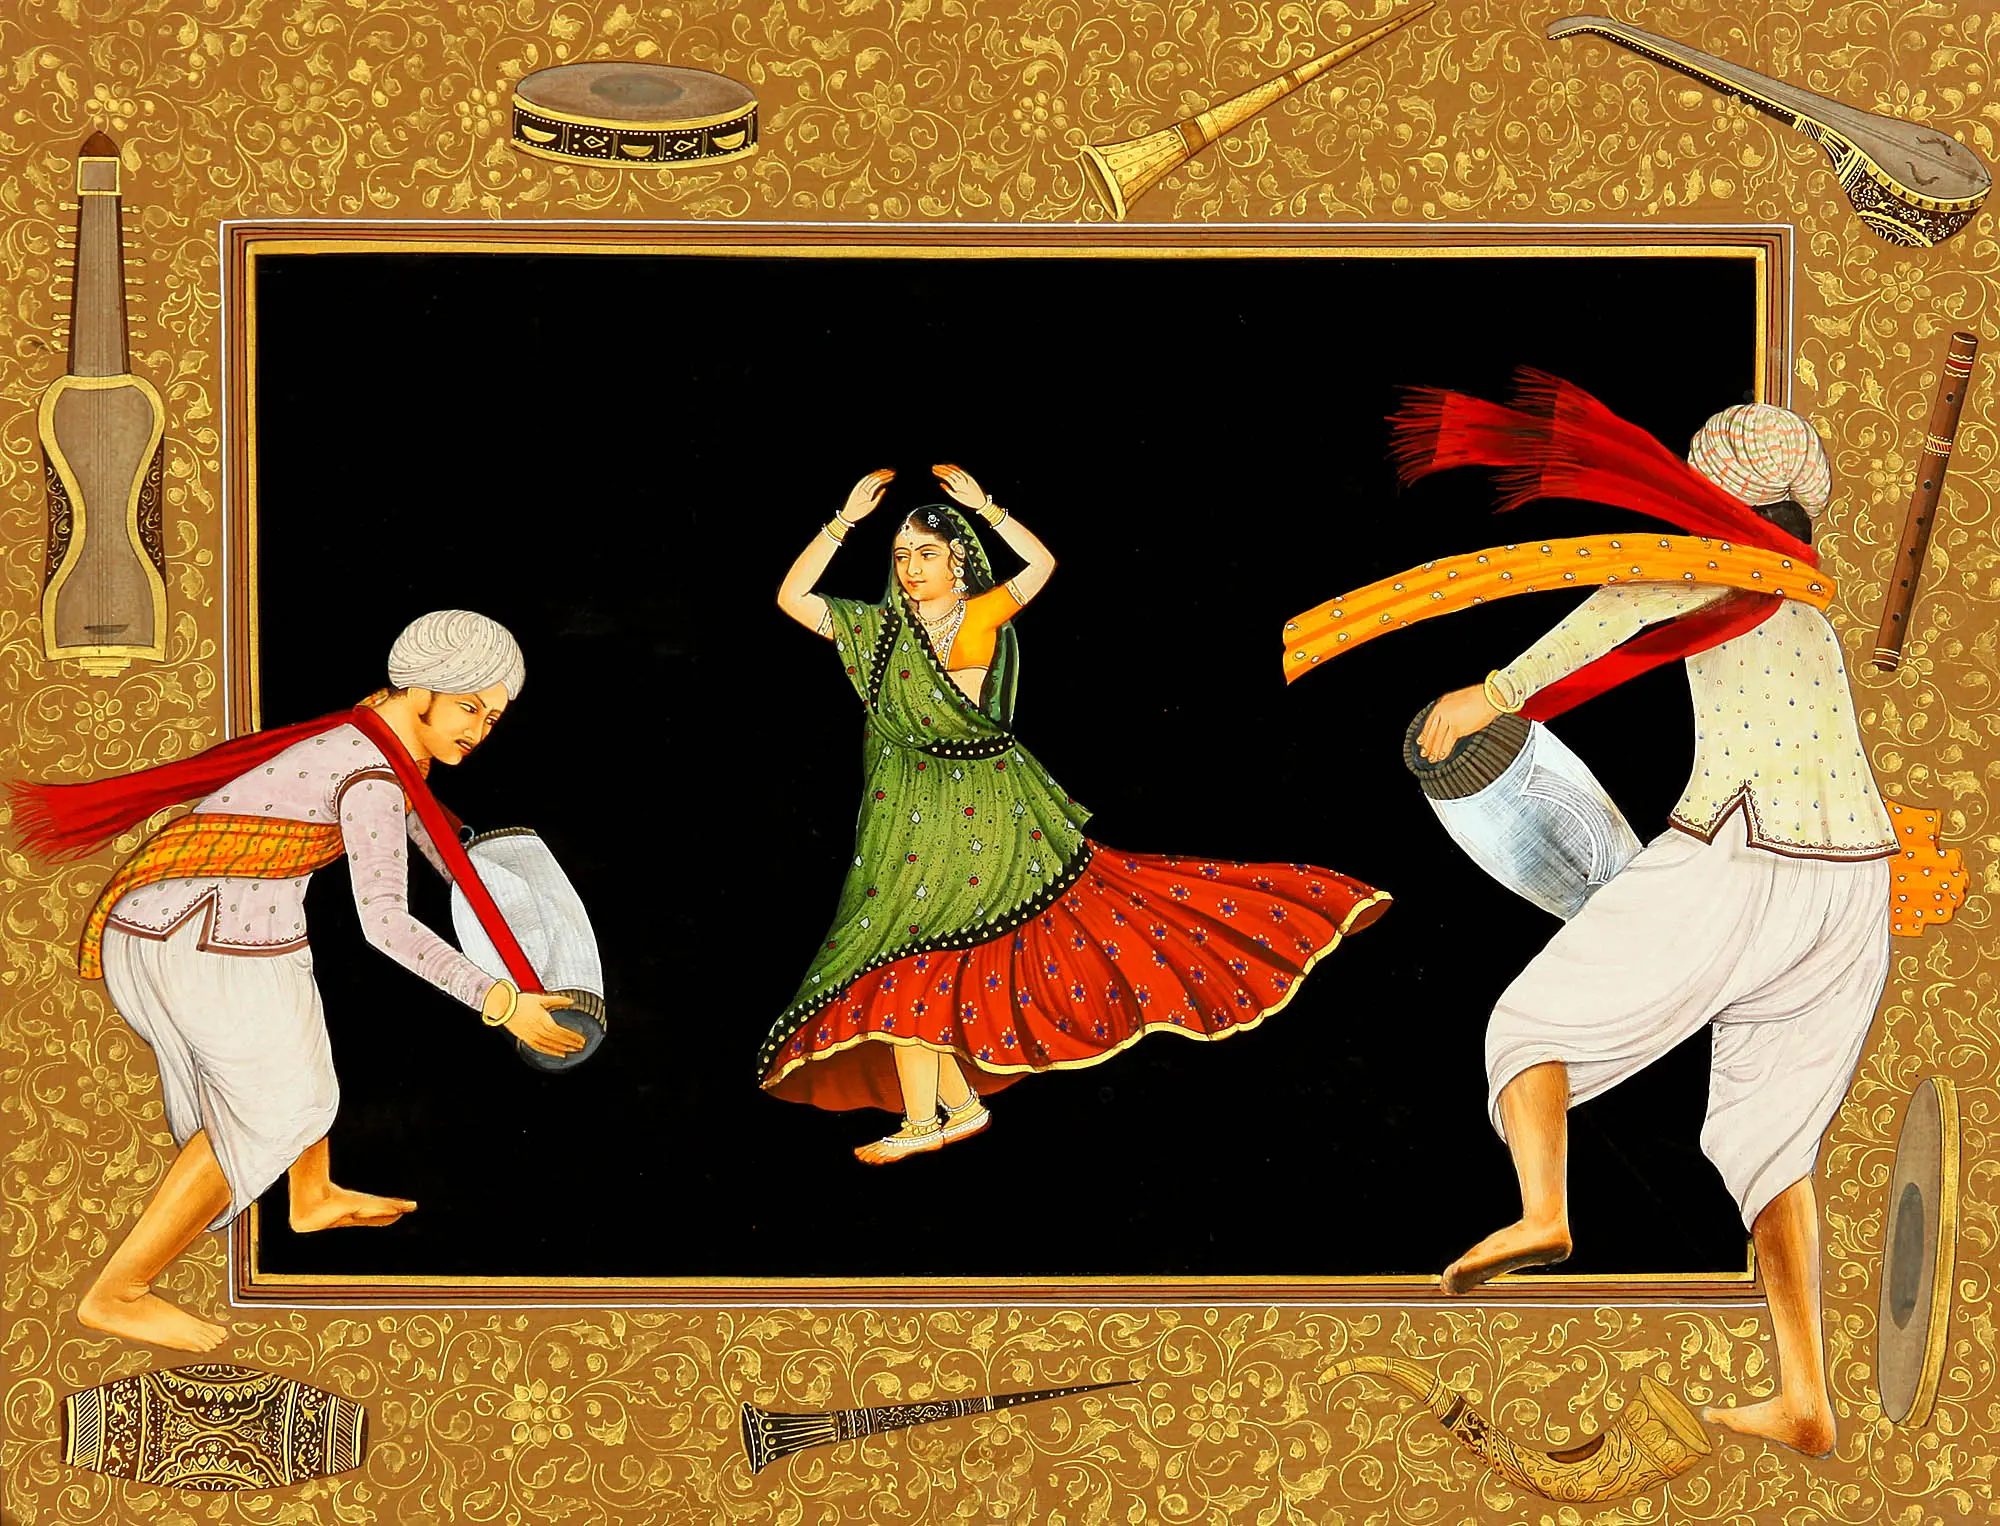 Танцы в древности